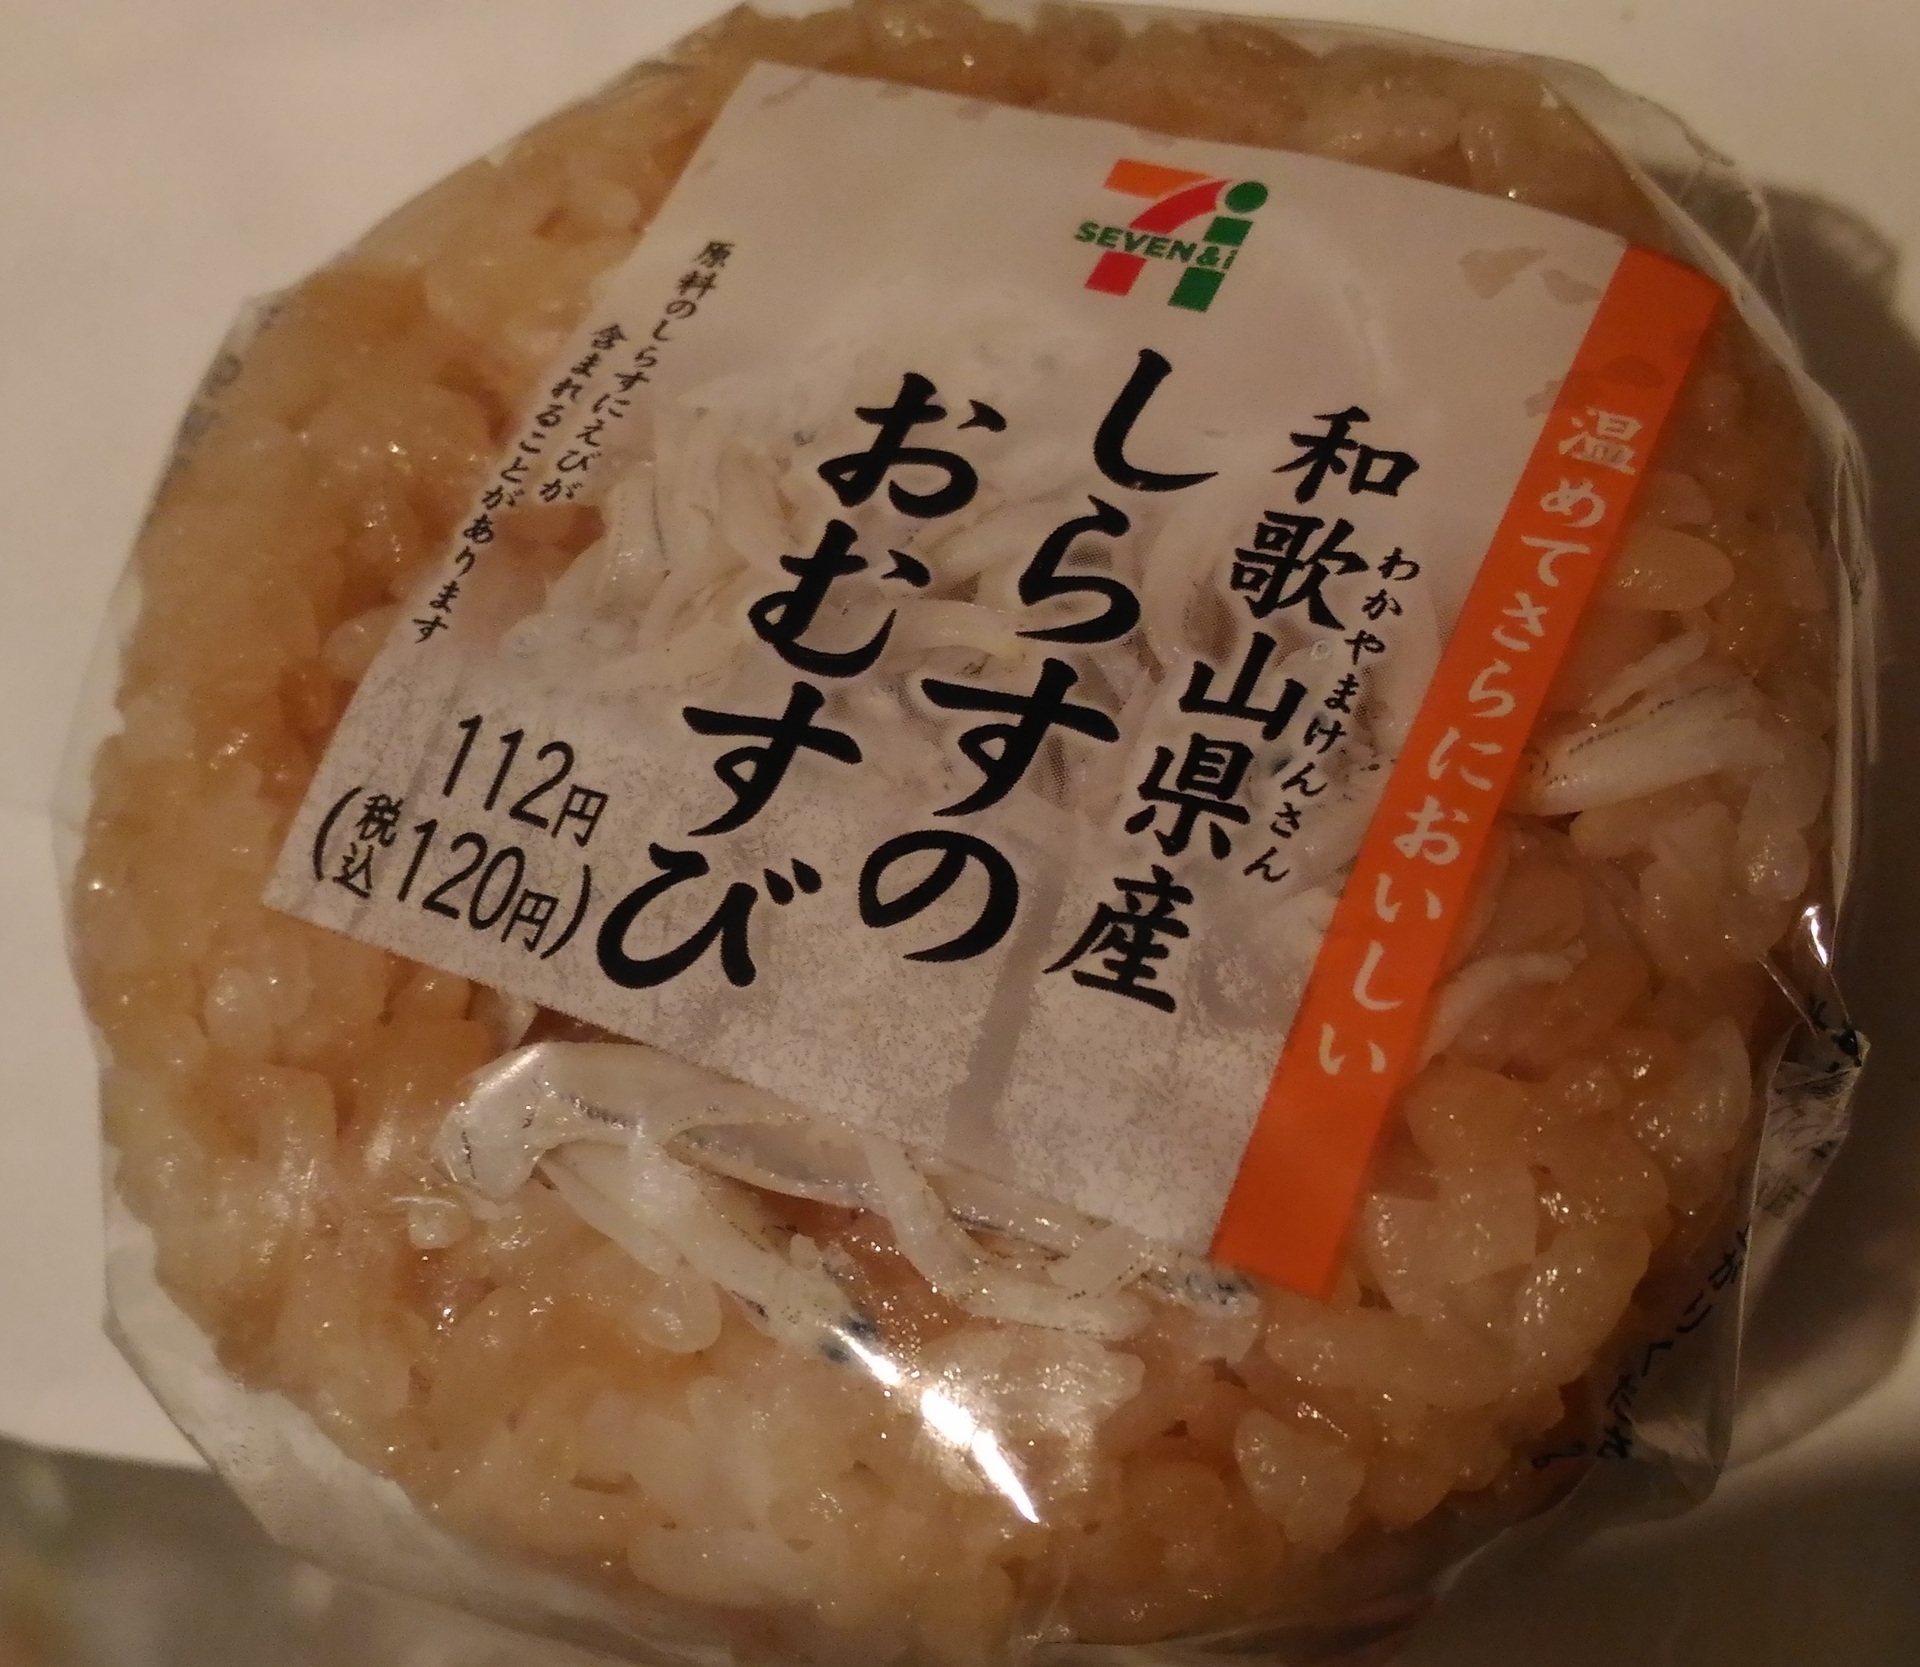 セブンイレブンおにぎり 和歌山県産しらすのおむすびのお値段は セブンイレブン人気おすすめ おにぎりお惣菜新作種類ブログで